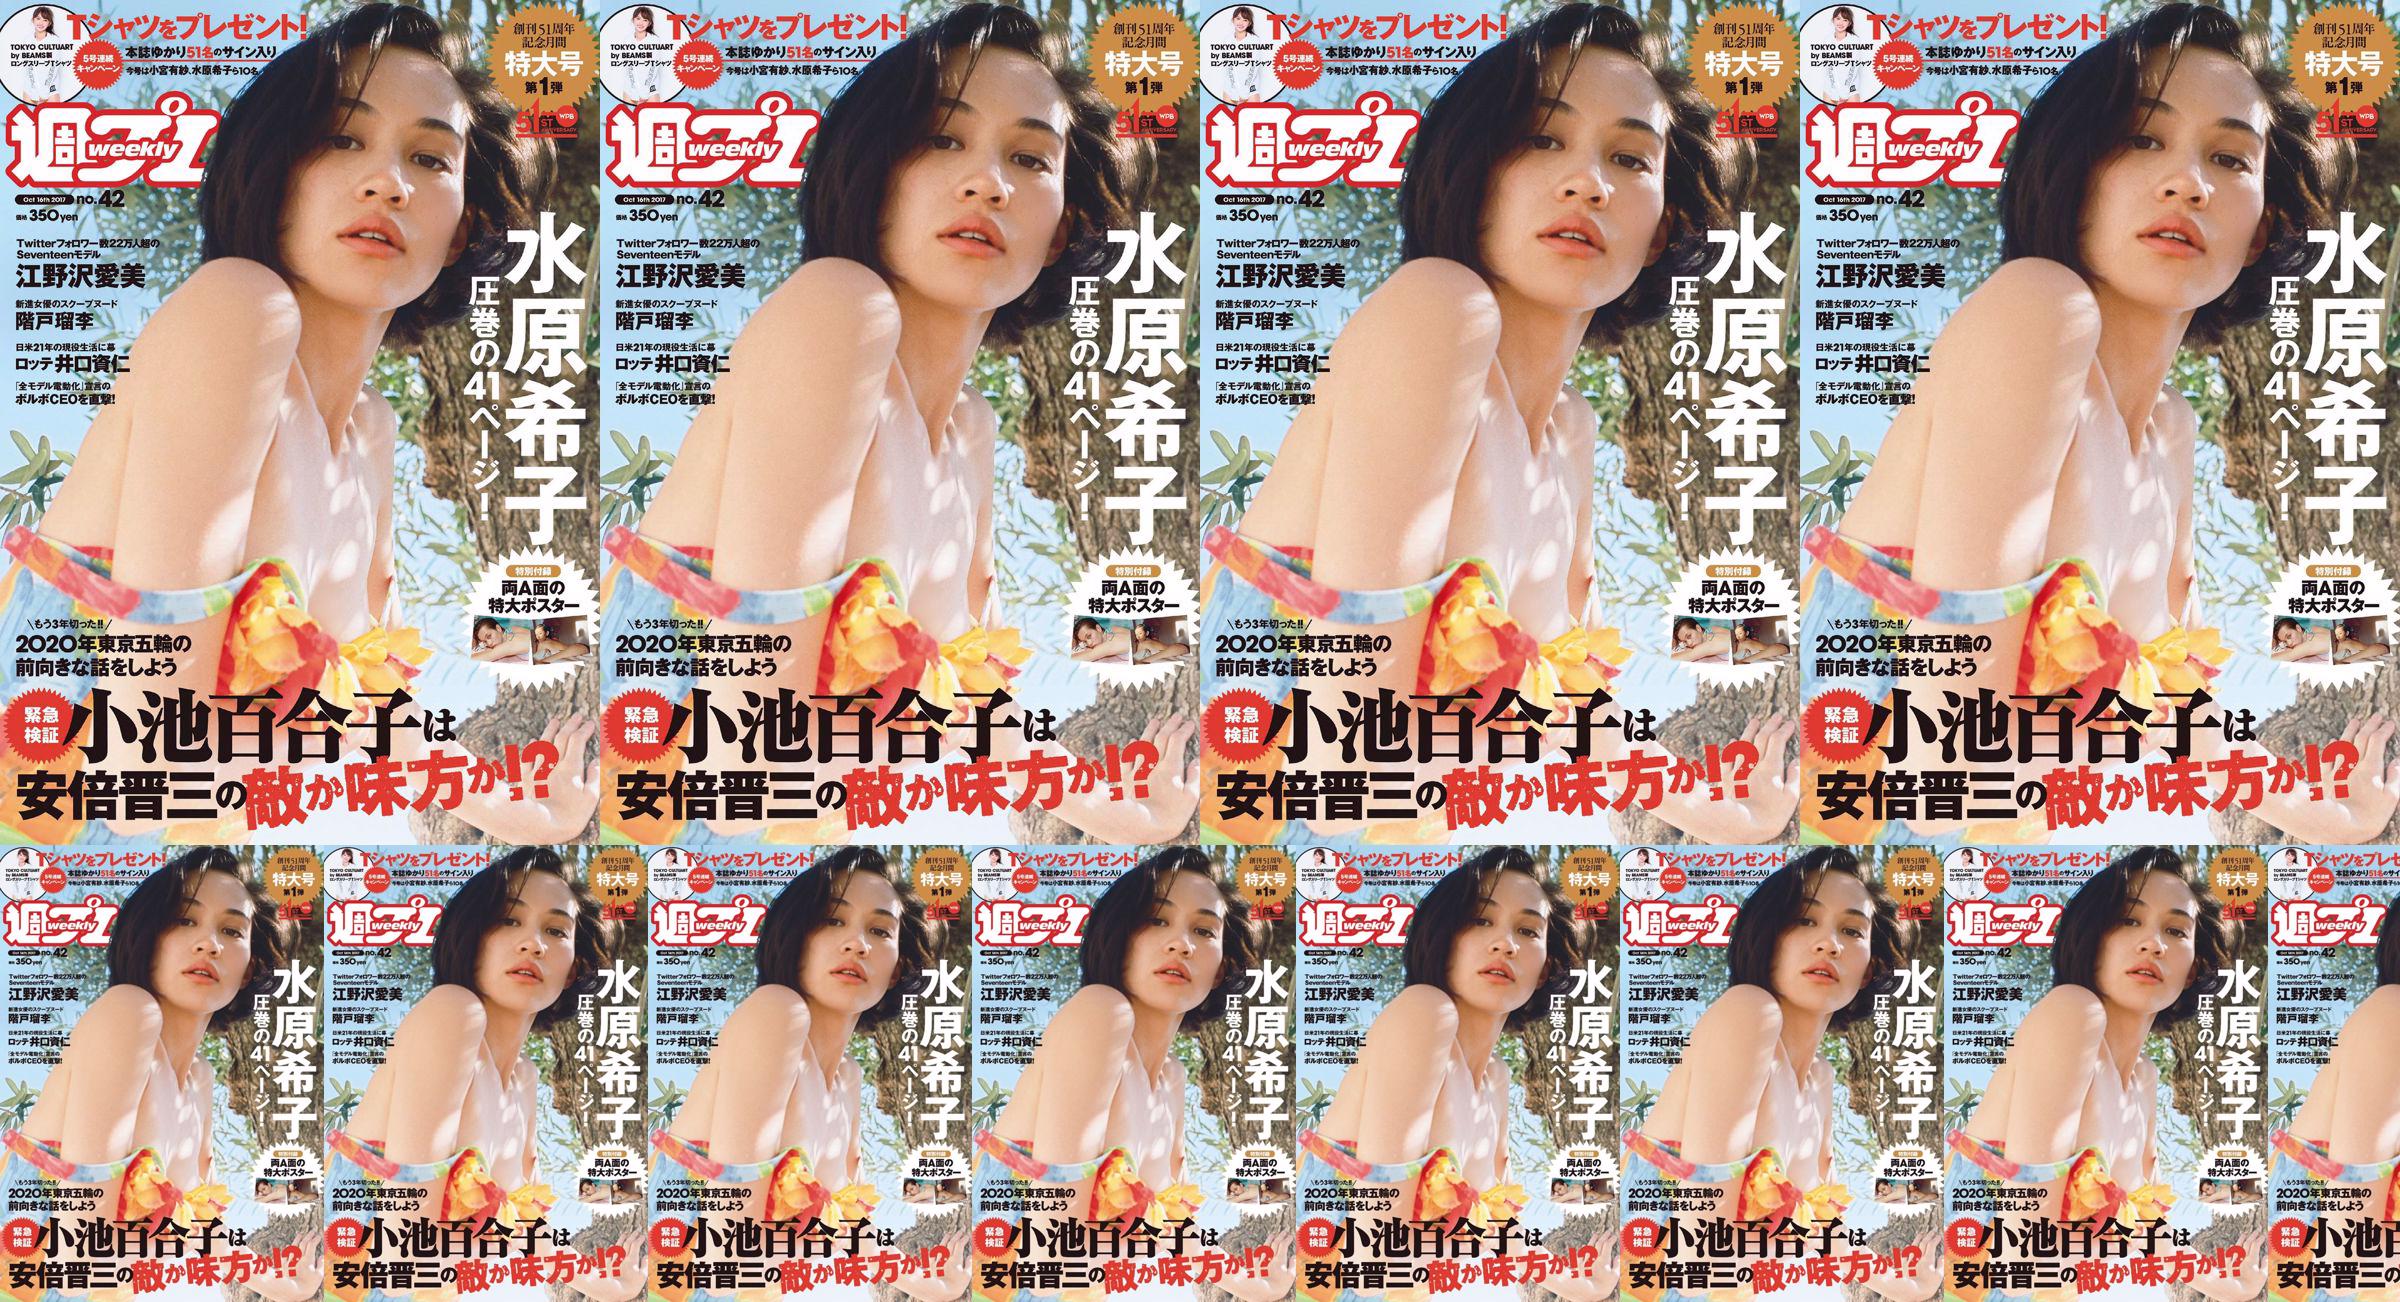 Kiko Mizuhara Manami Enosawa Serina Fukui Miu Nakamura Ruri Shinato [Weekly Playboy] 2017 No.42 Photo Magazine No.4ffb48 Pagina 20